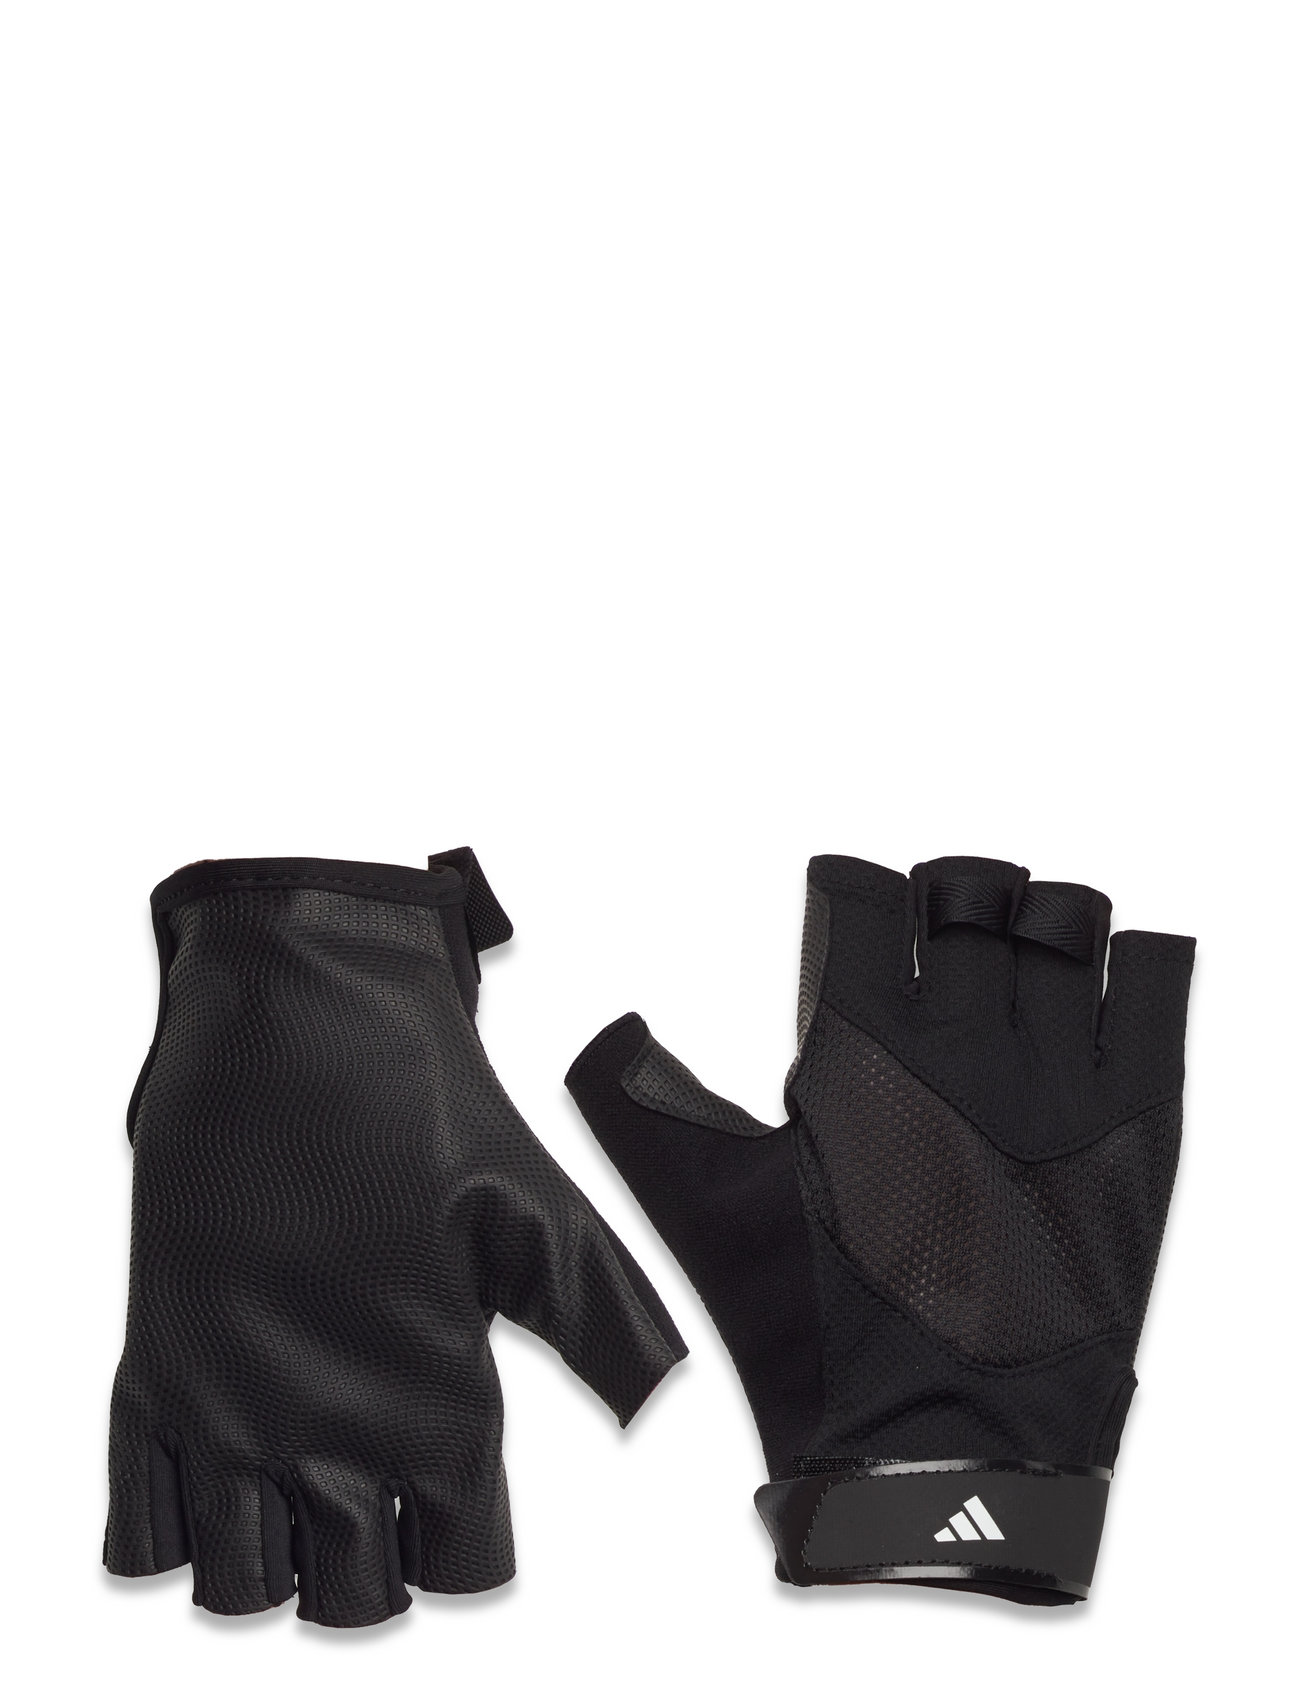 Auto årsag Kviksølv adidas Performance Training Glove - Handsker & Vanter | Boozt.com